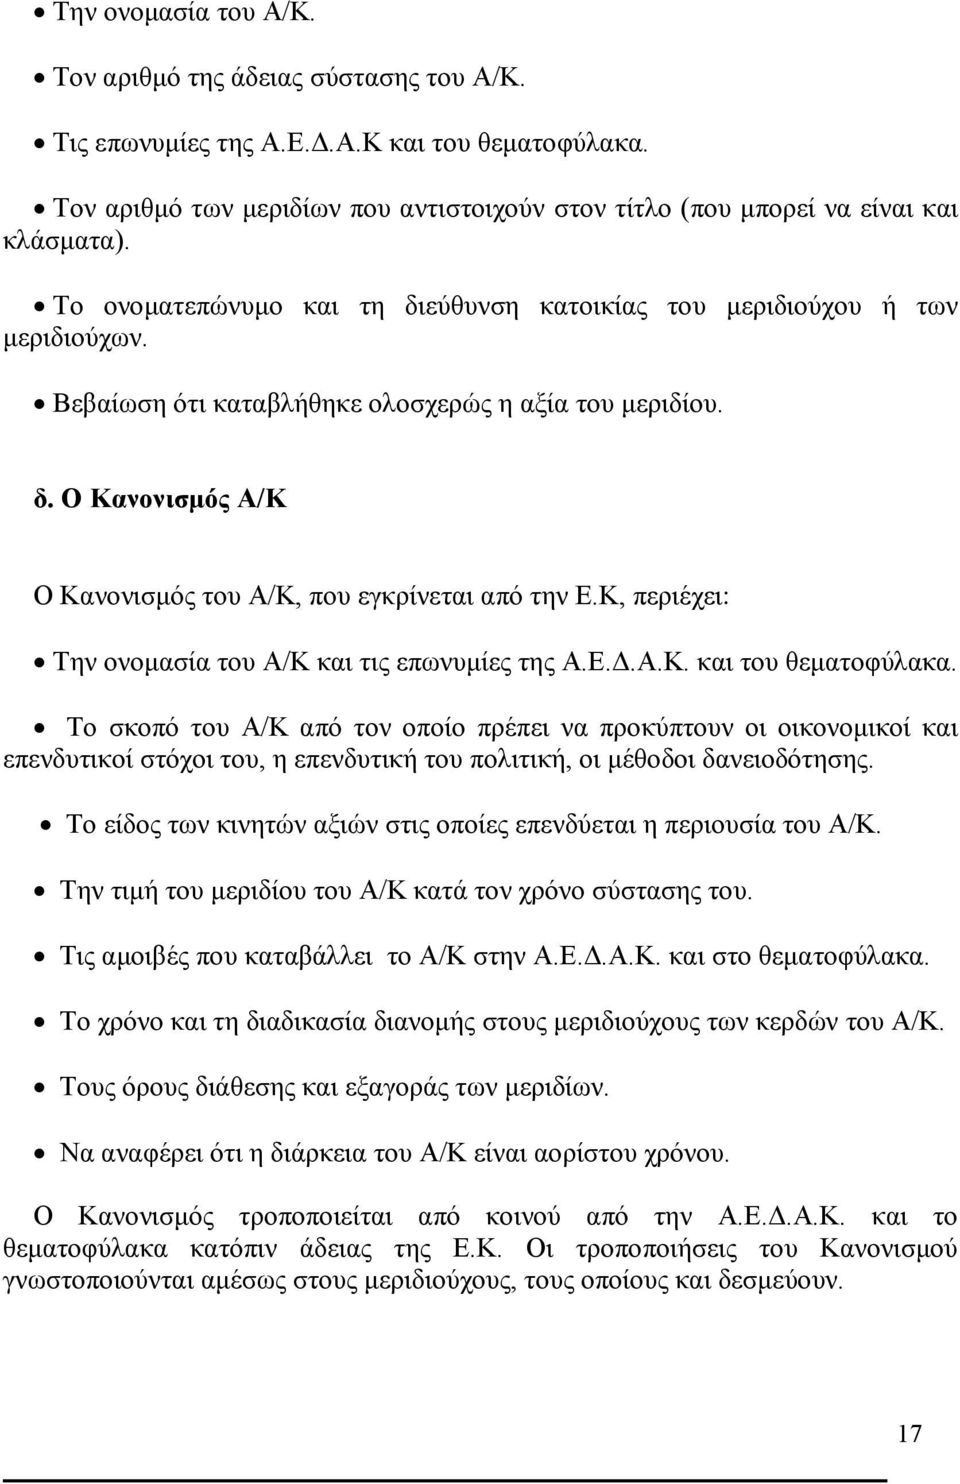 Κ, περιέχει: Την ονομασία του Α/Κ και τις επωνυμίες της Α.Ε.Δ.Α.Κ. και του θεματοφύλακα.